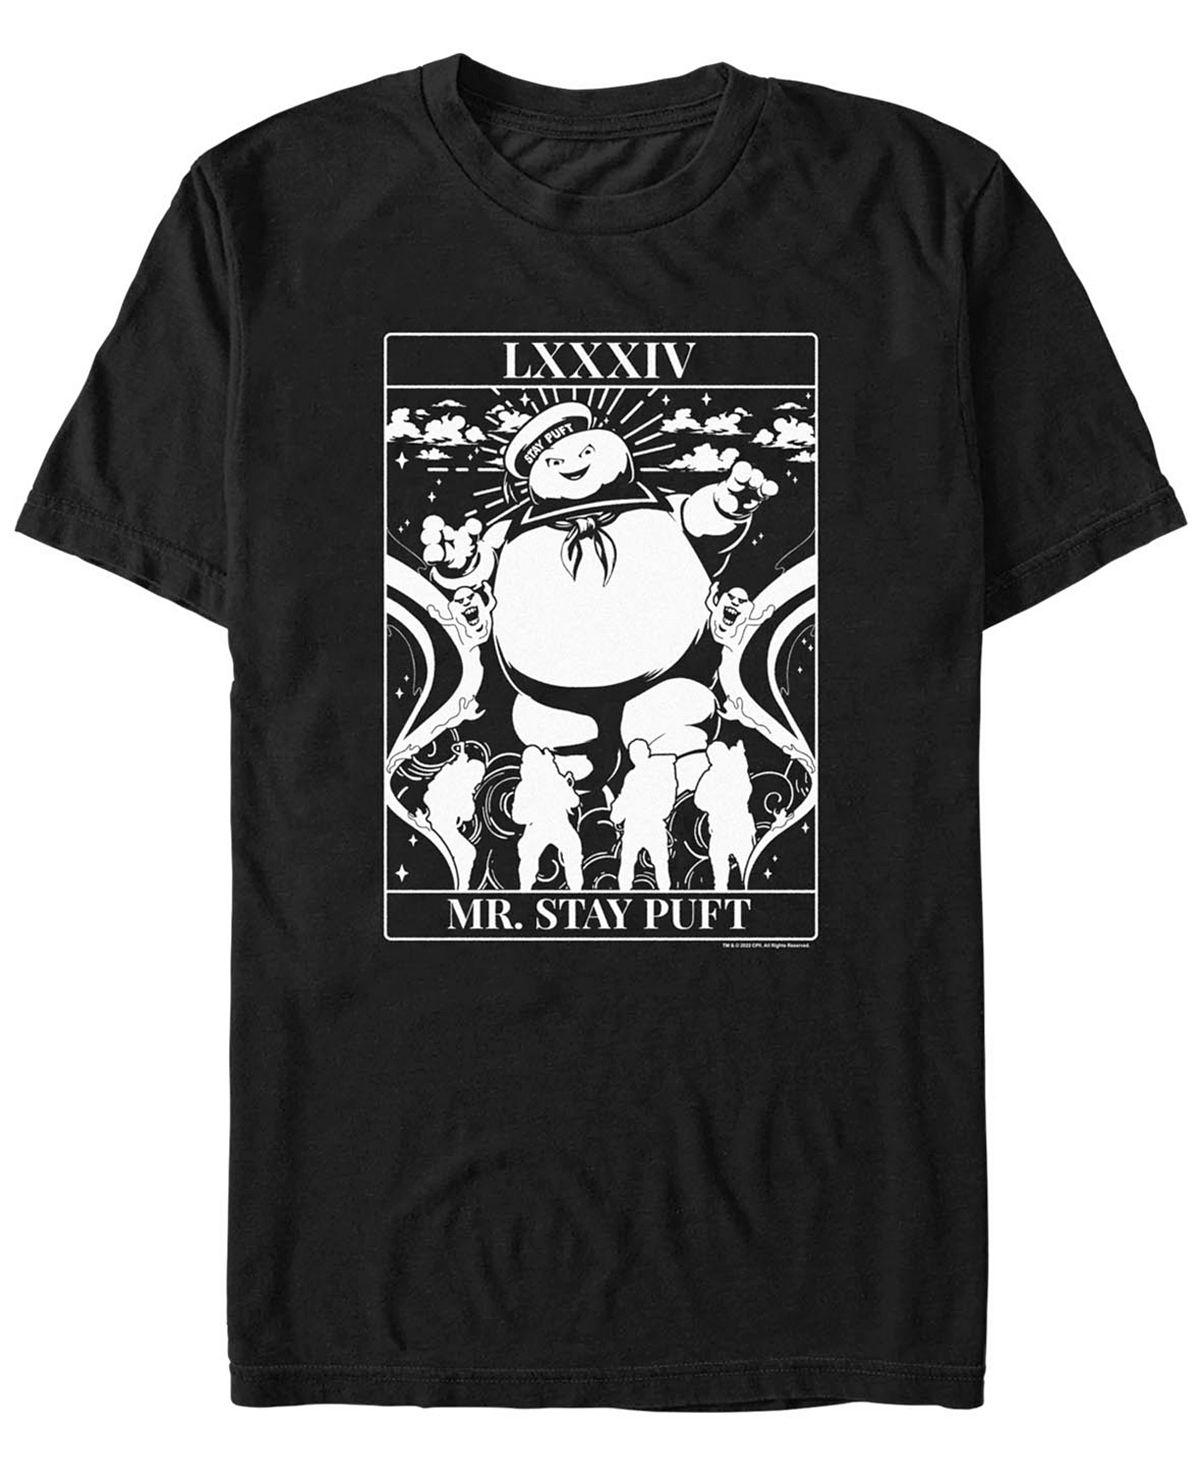 Мужская футболка с короткими рукавами ghostbusters puft tarot Fifth Sun, черный